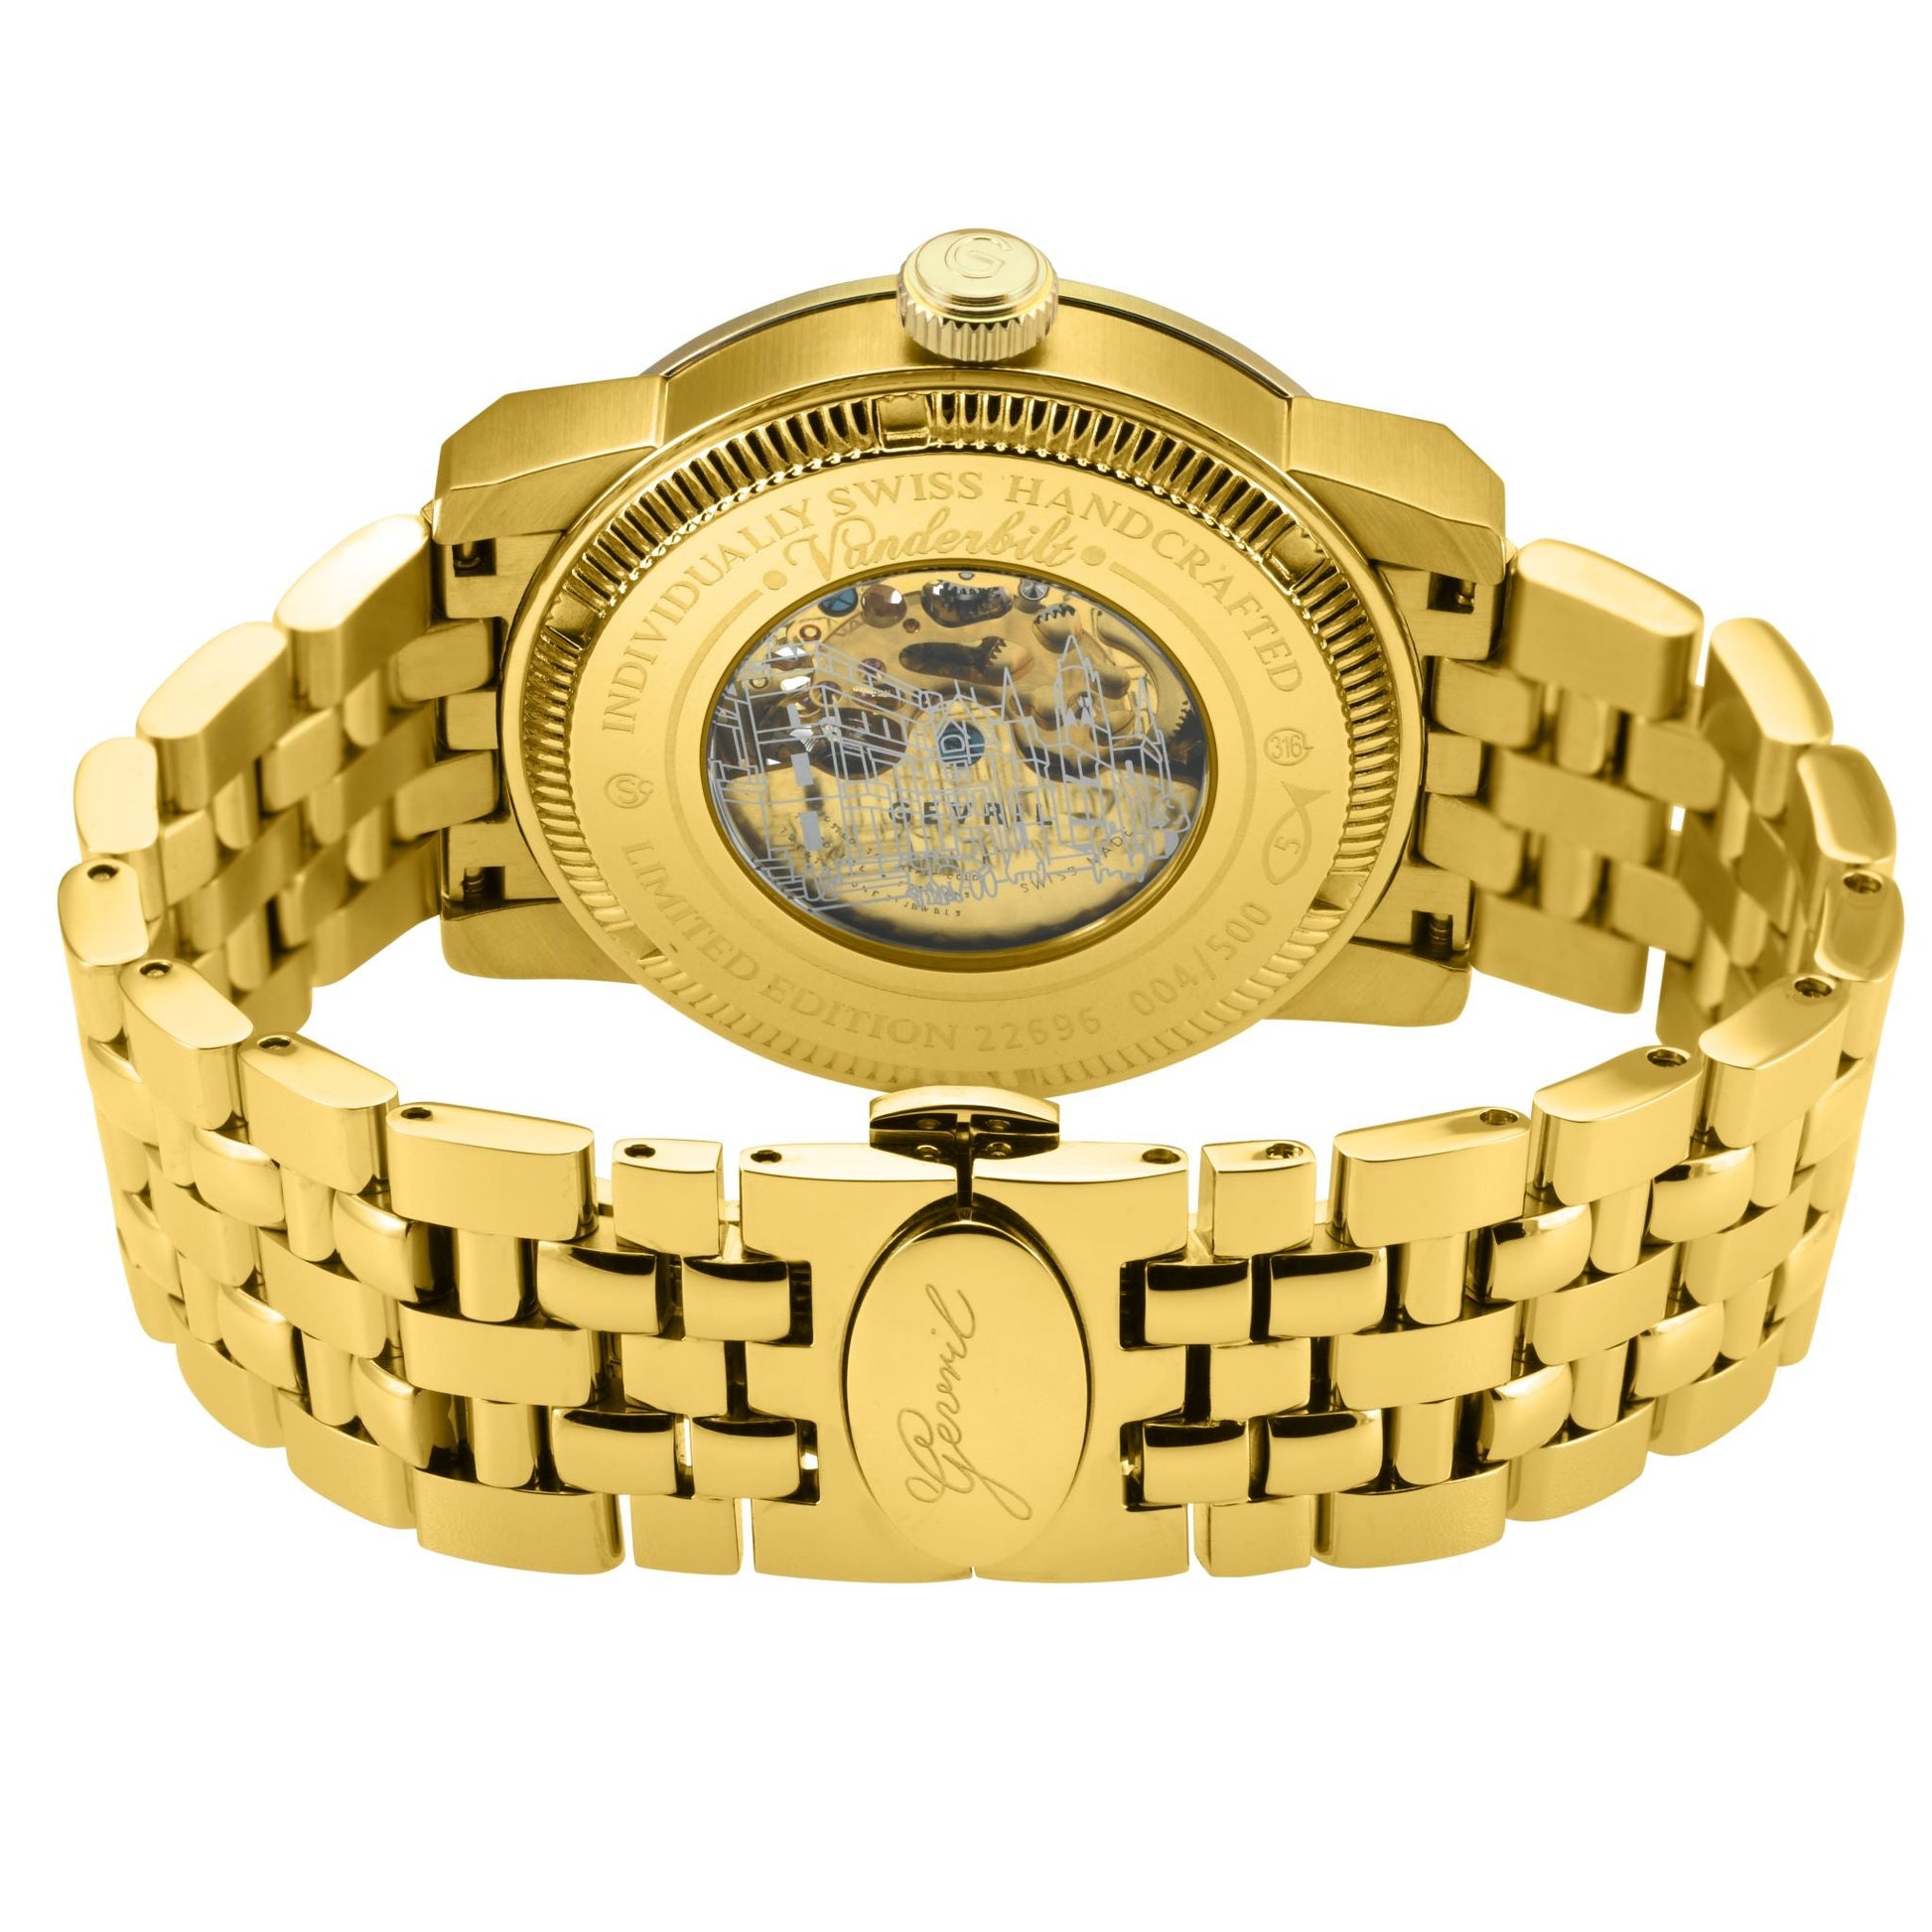 Gevril-Luxury-Swiss-Watches-Gevril Vanderbilt Open Heart-22692B